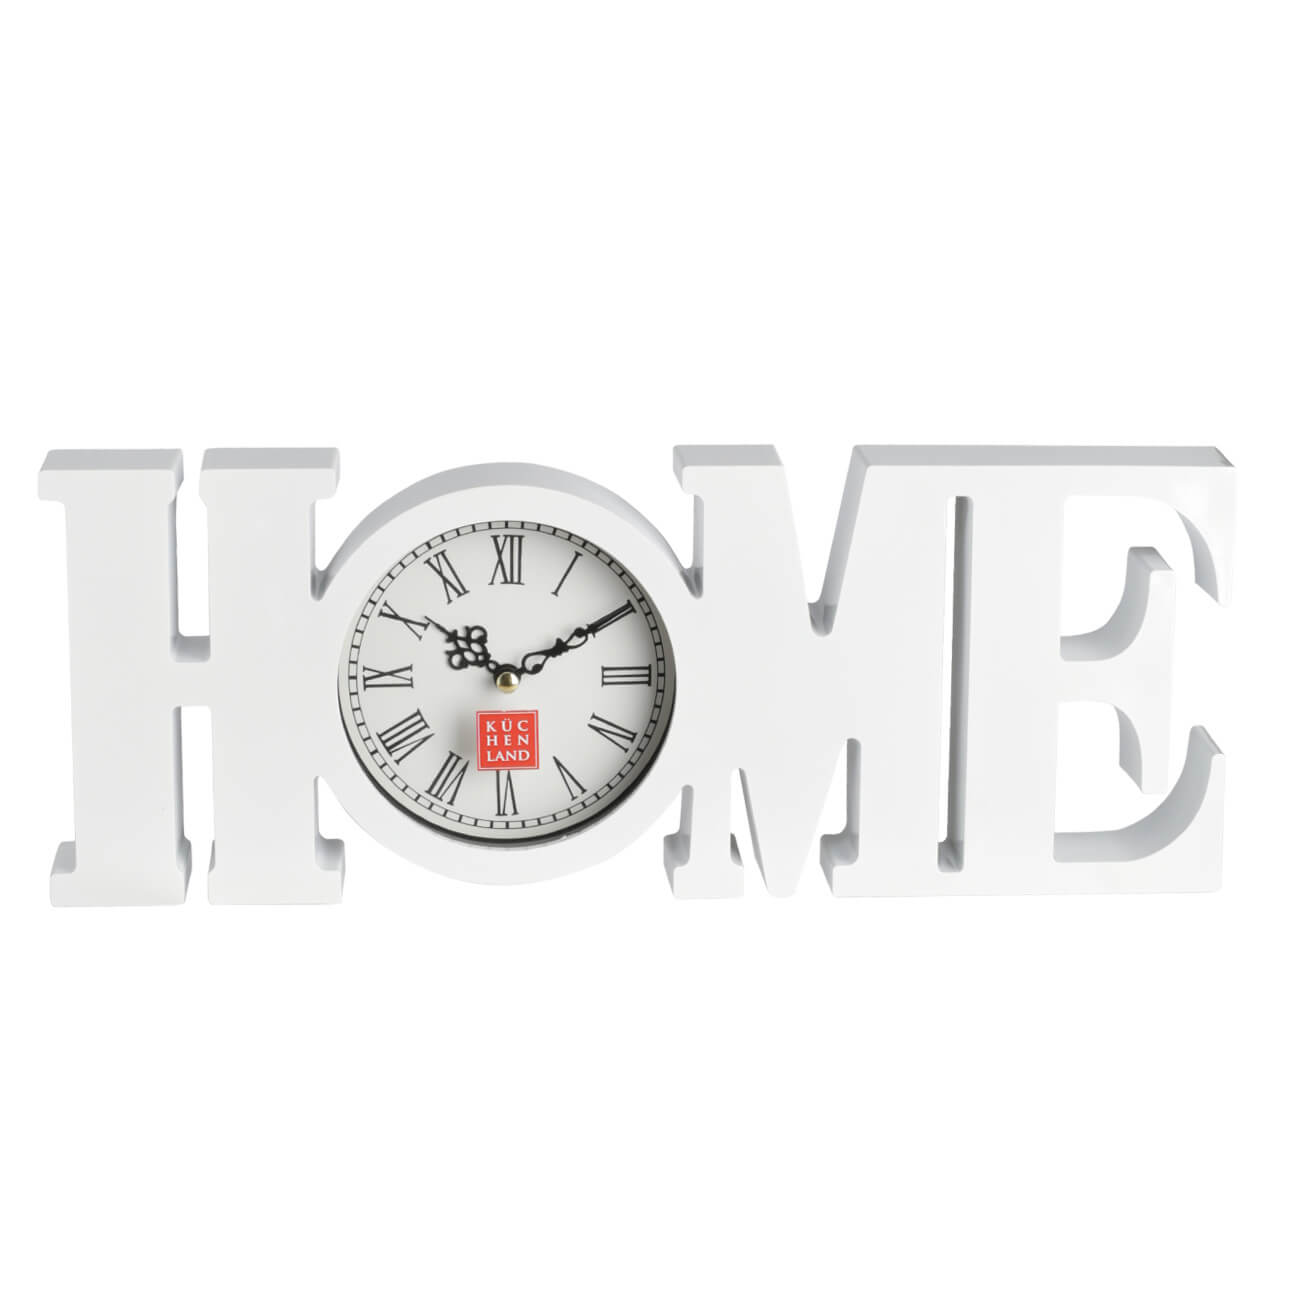 Часы настенные, 39х15 см, пластик/стекло, белые, Ноmе, Home deco настенные часы uniel